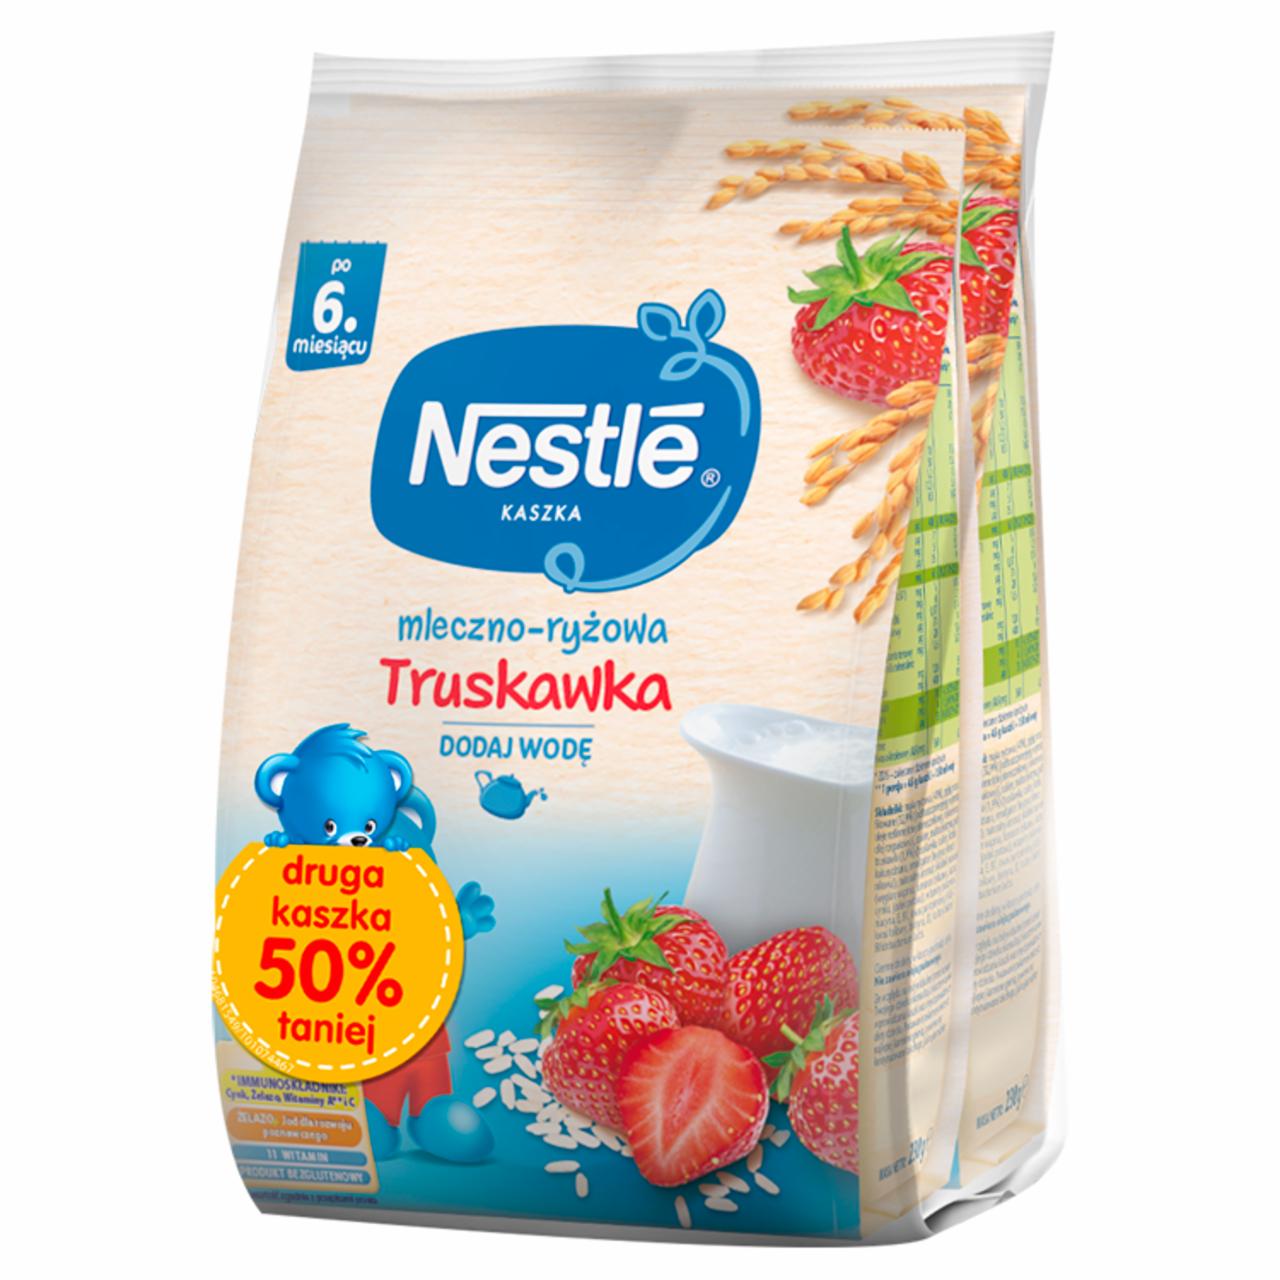 Zdjęcia - Nestlé Kaszka mleczno-ryżowa truskawka po 6. miesiącu 460 g (2 x 230 g)